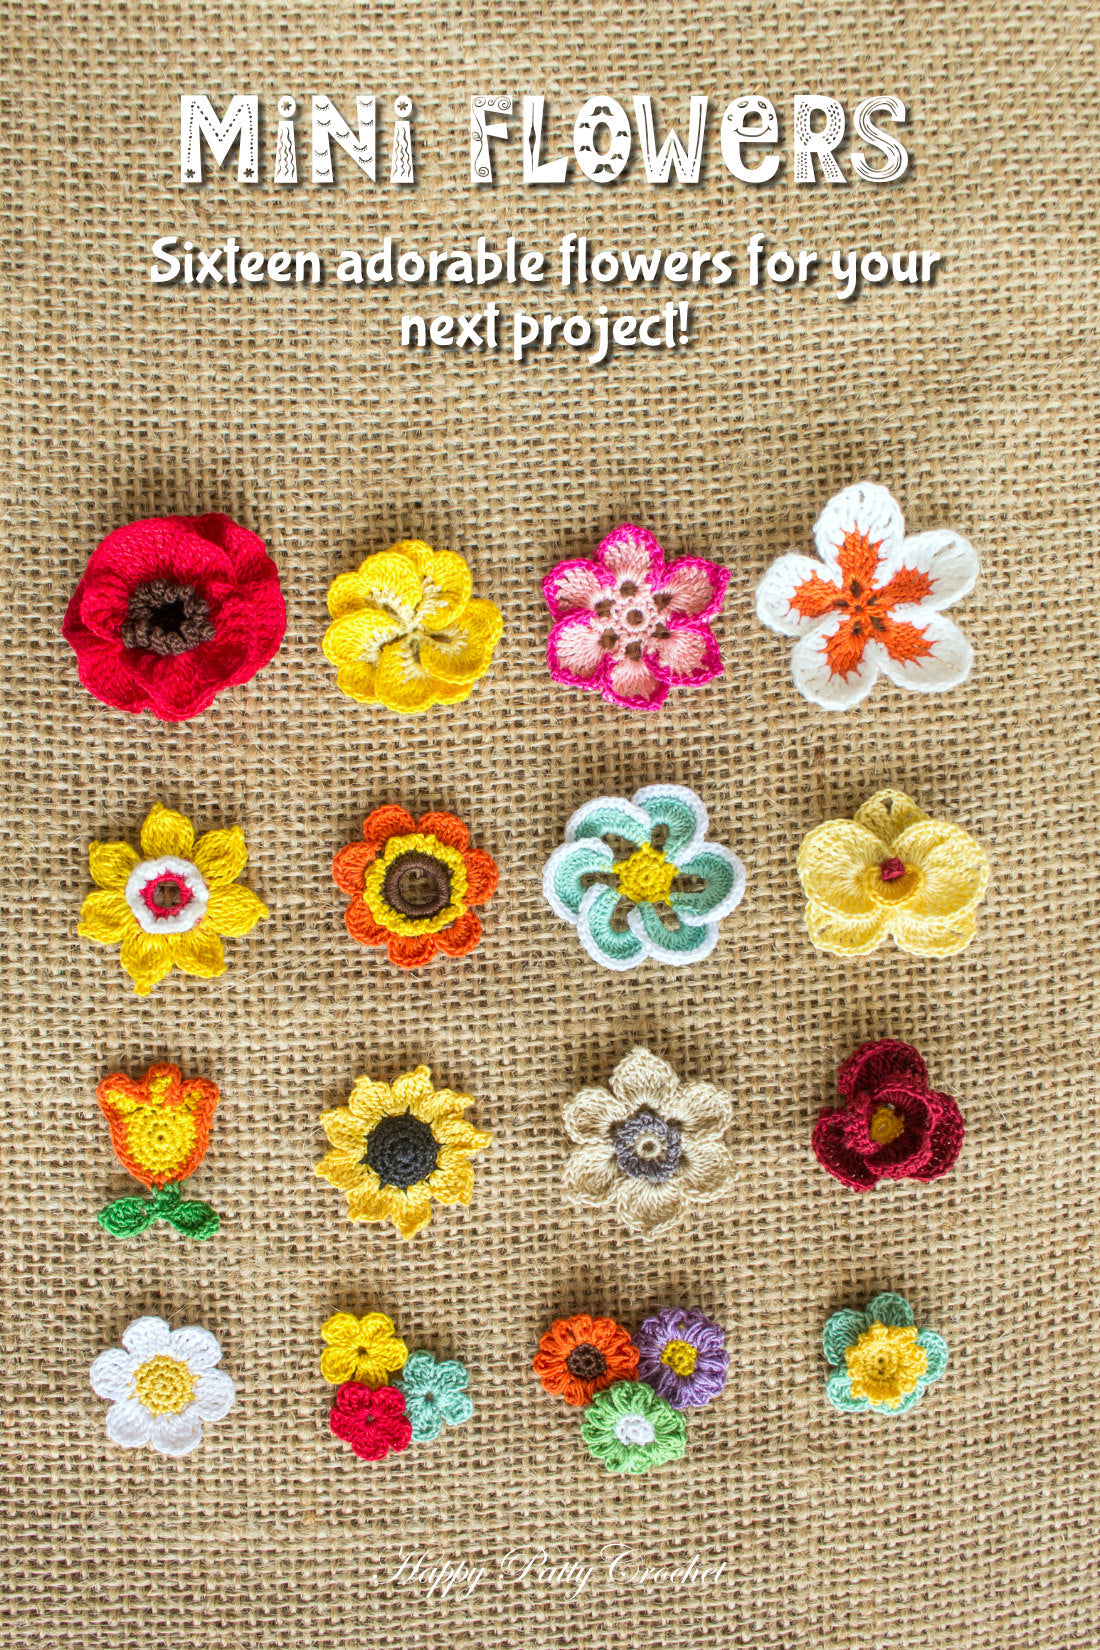 Crochet Rose Applique Pattern by Happy Patty Crochet